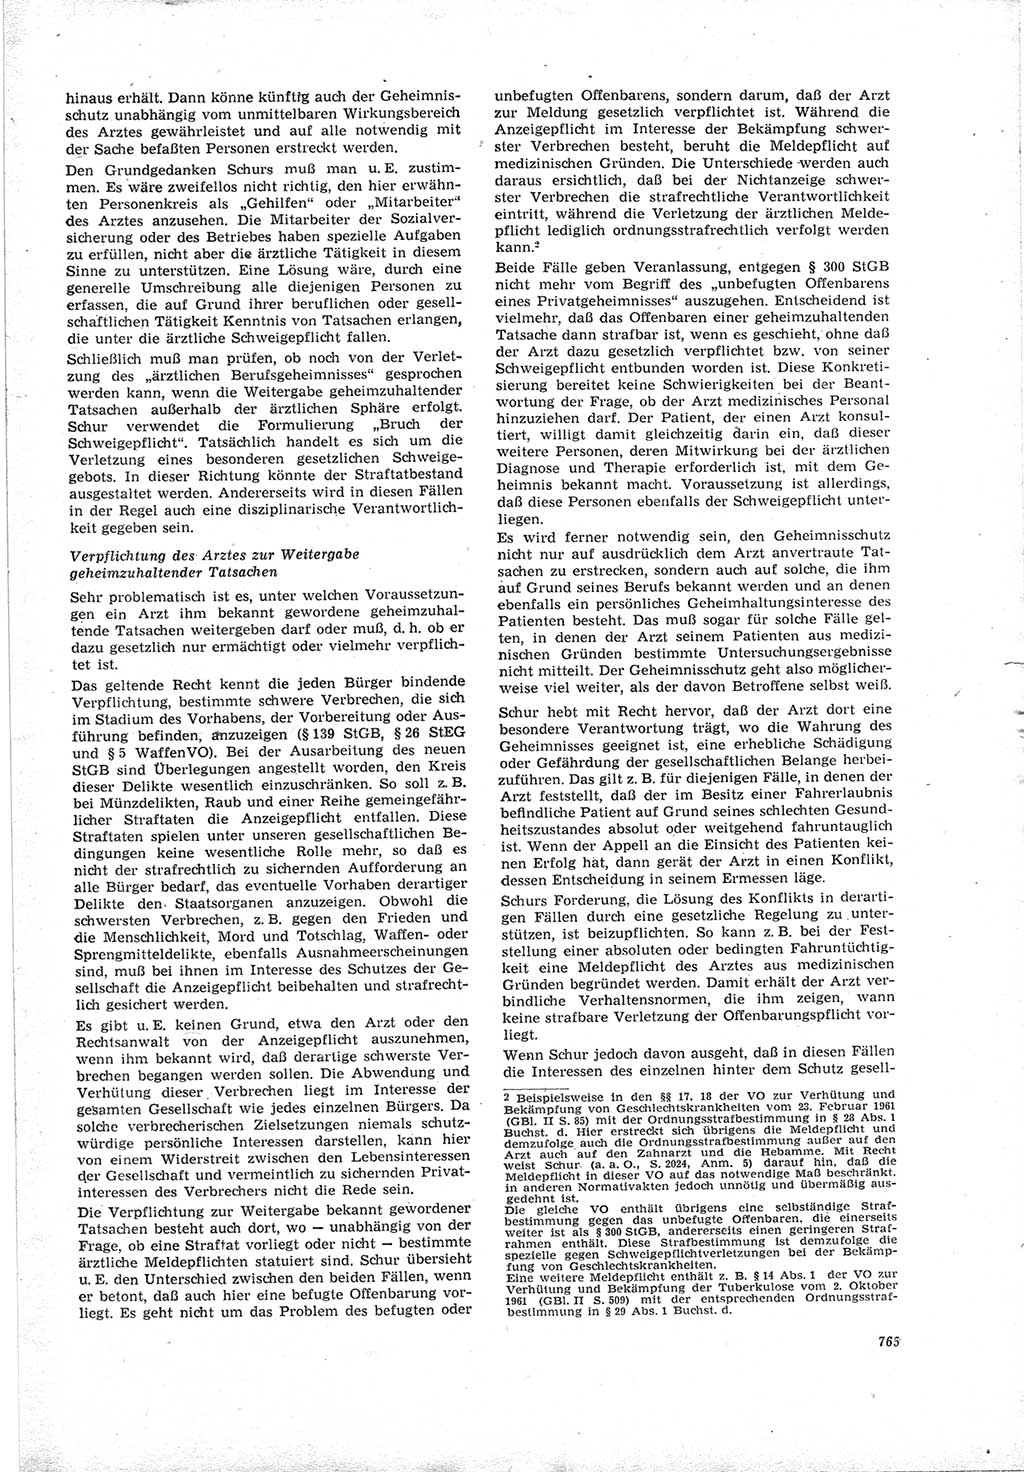 Neue Justiz (NJ), Zeitschrift für Recht und Rechtswissenschaft [Deutsche Demokratische Republik (DDR)], 19. Jahrgang 1965, Seite 765 (NJ DDR 1965, S. 765)